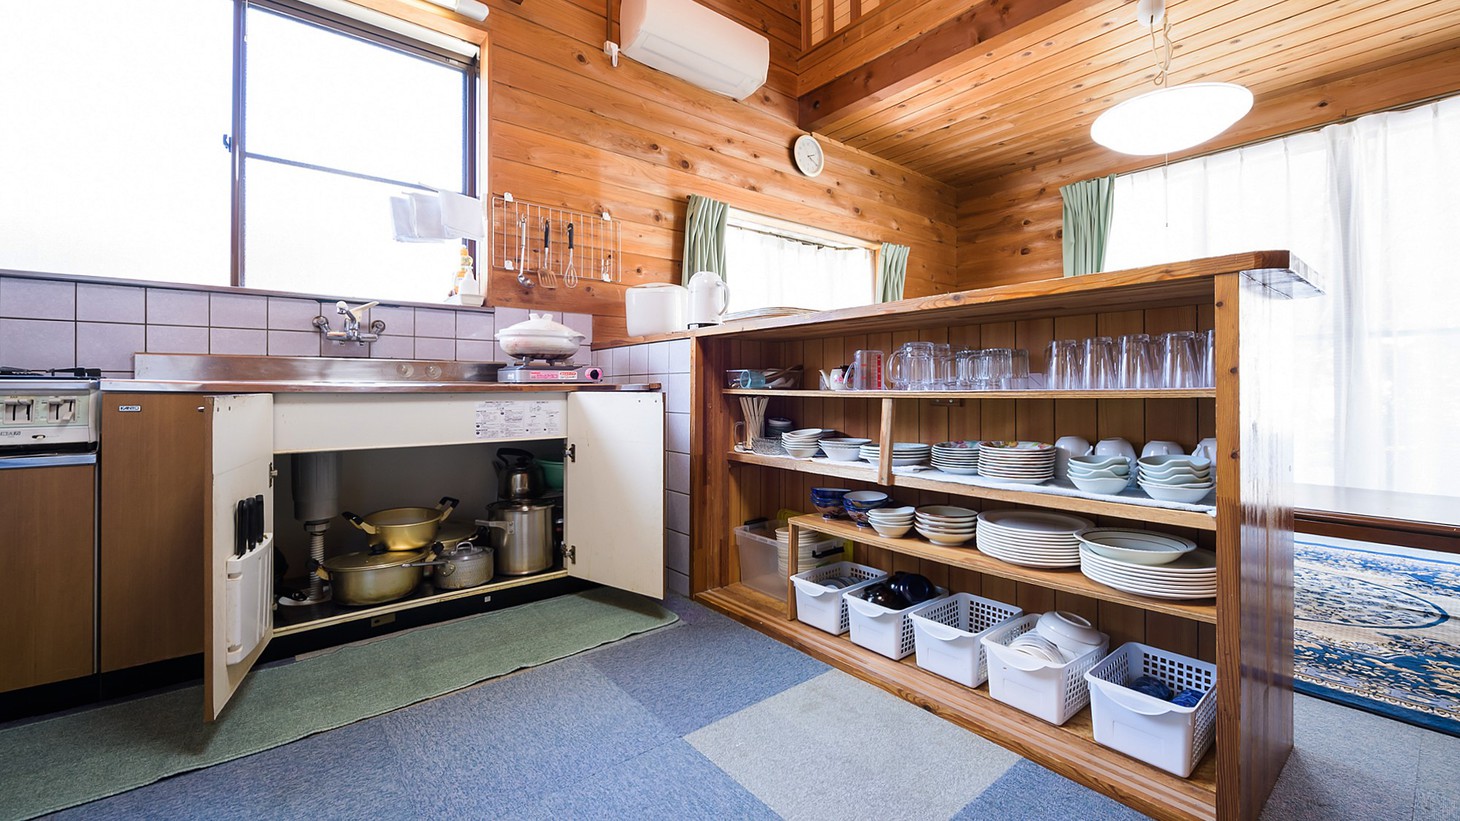 ・ログコテージには、食器や調理用具など一通りそろっています。